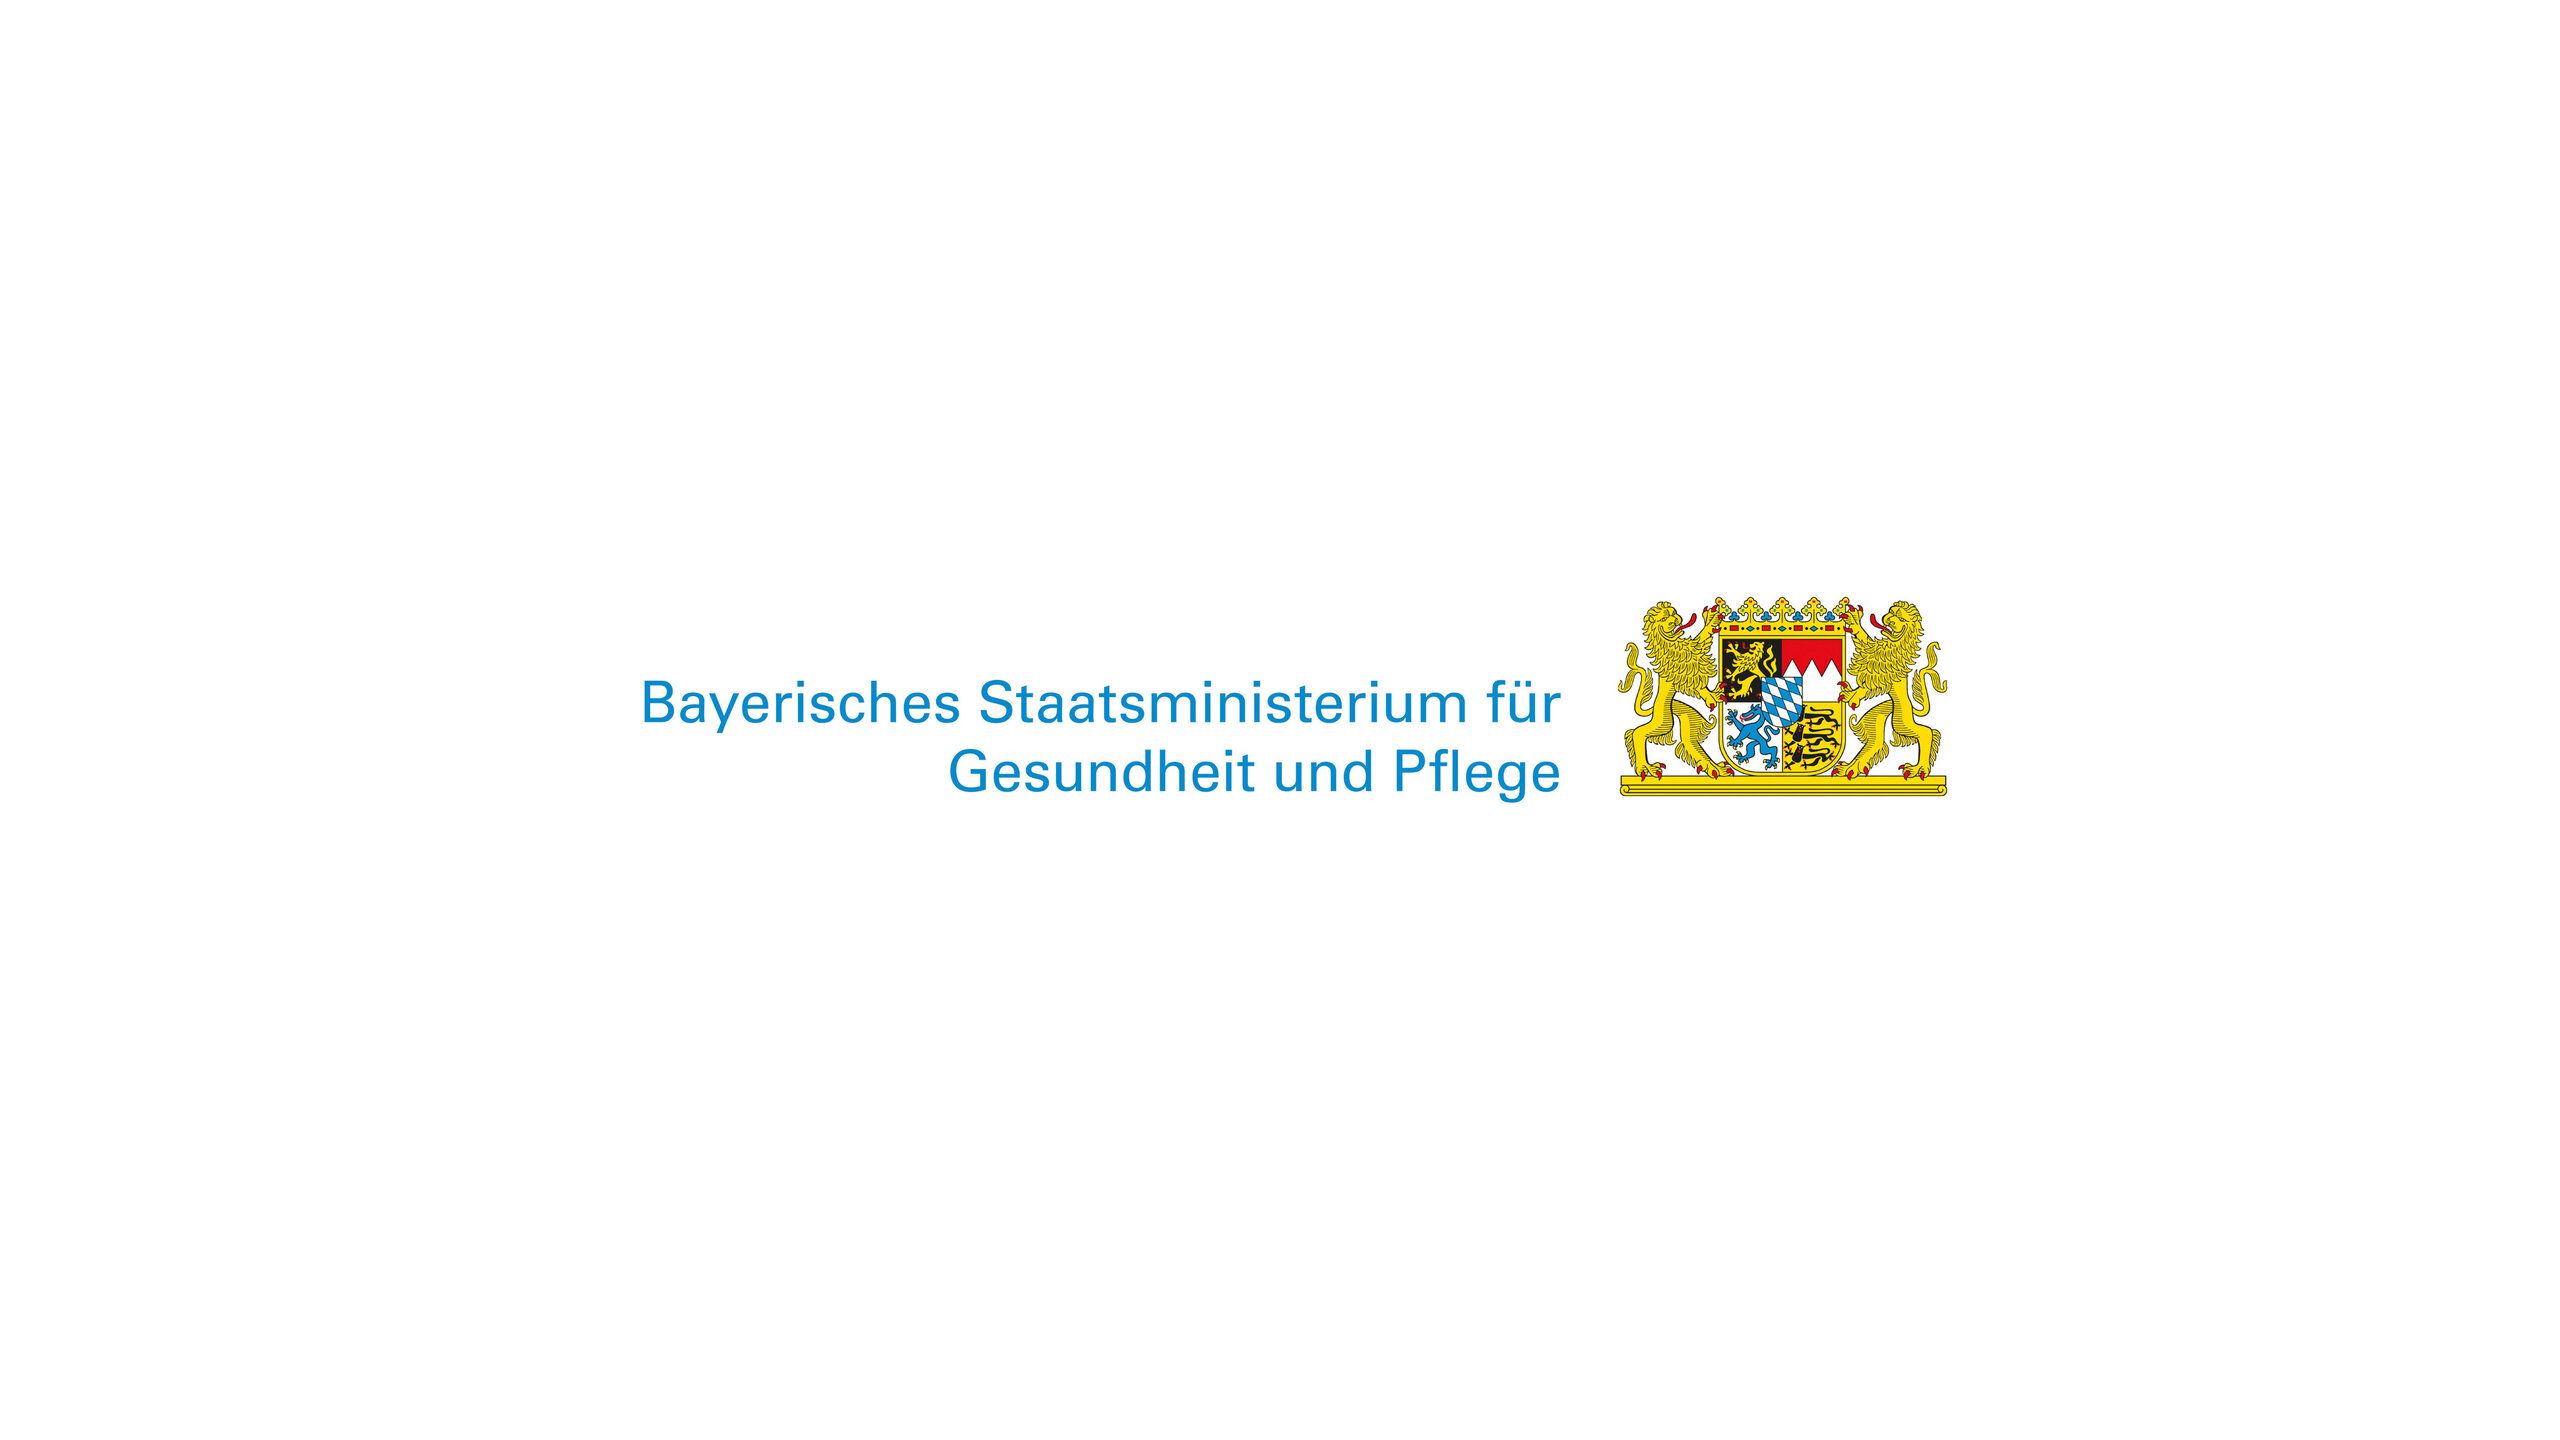 Das Logo und der Text des "Bayrischen Staatsministerium für Gesundheit und Pflege"